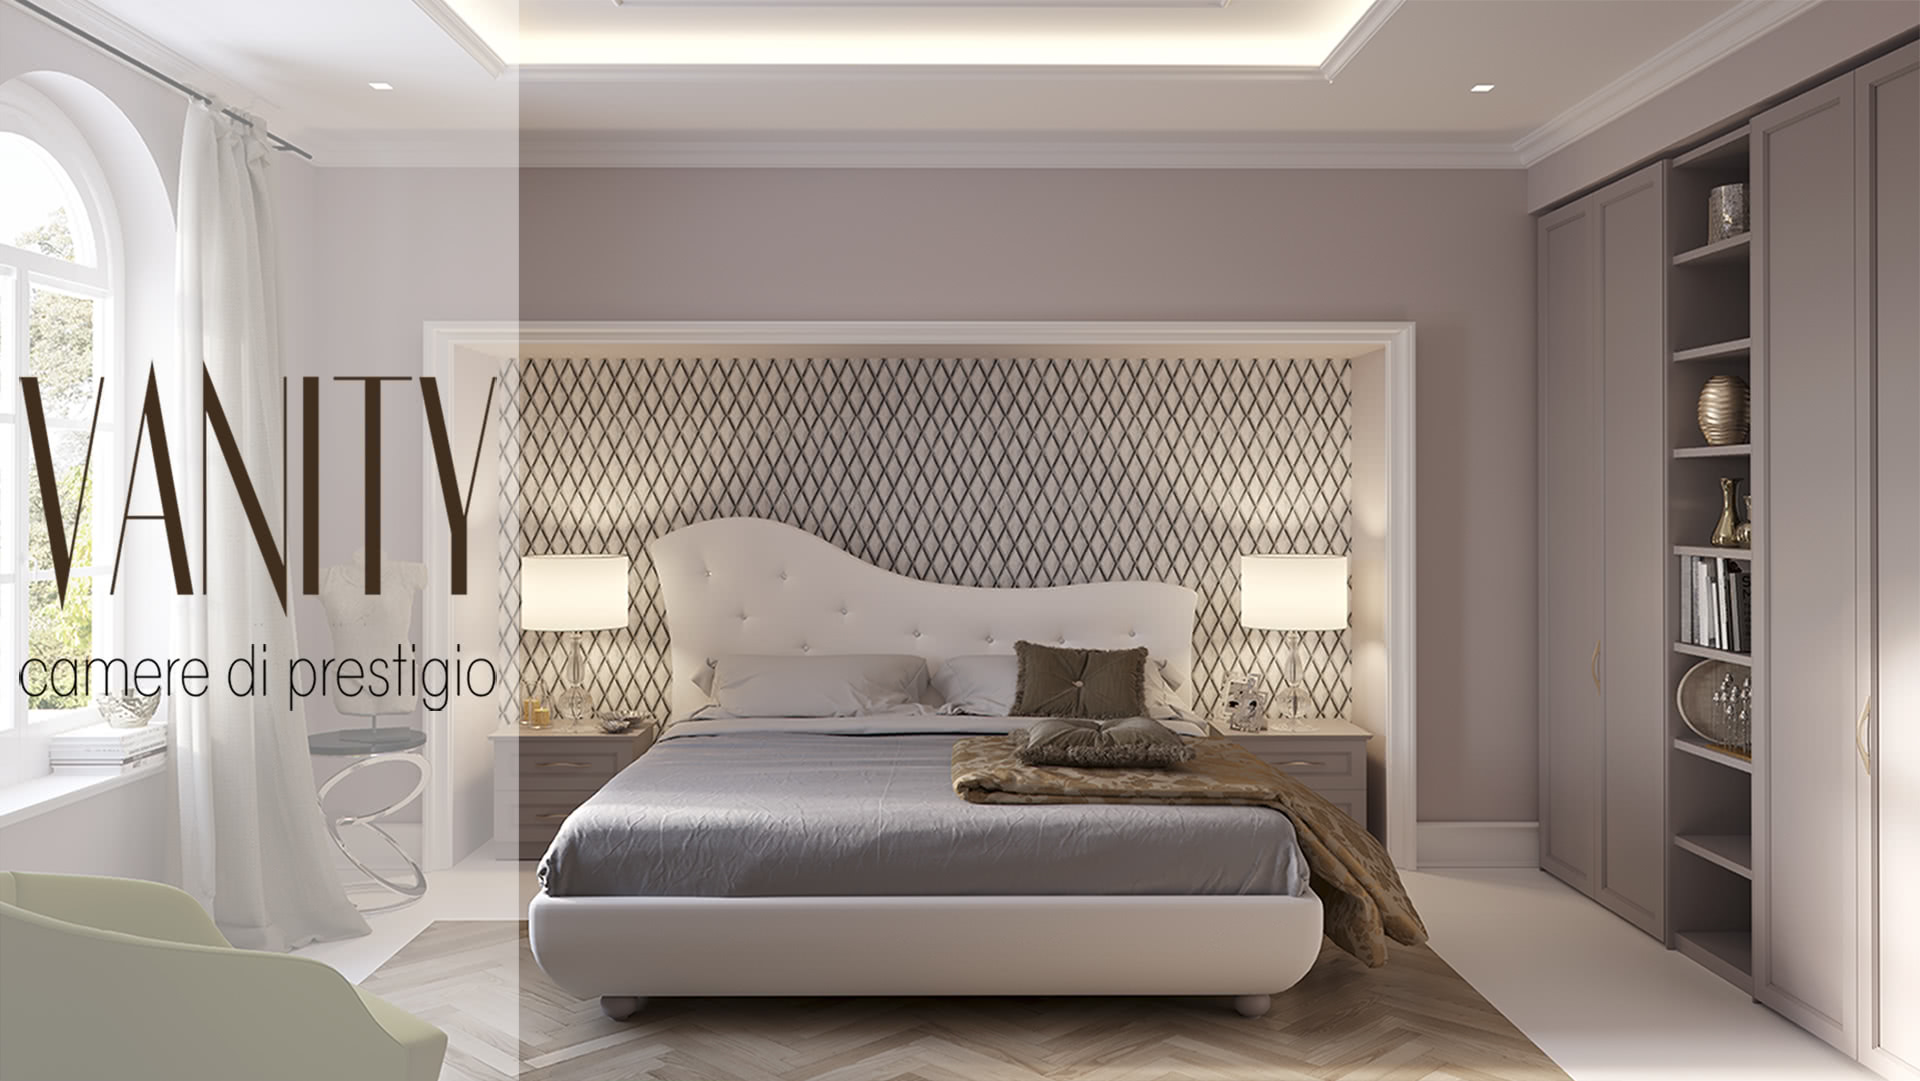 Vanity - prestige bedrooms